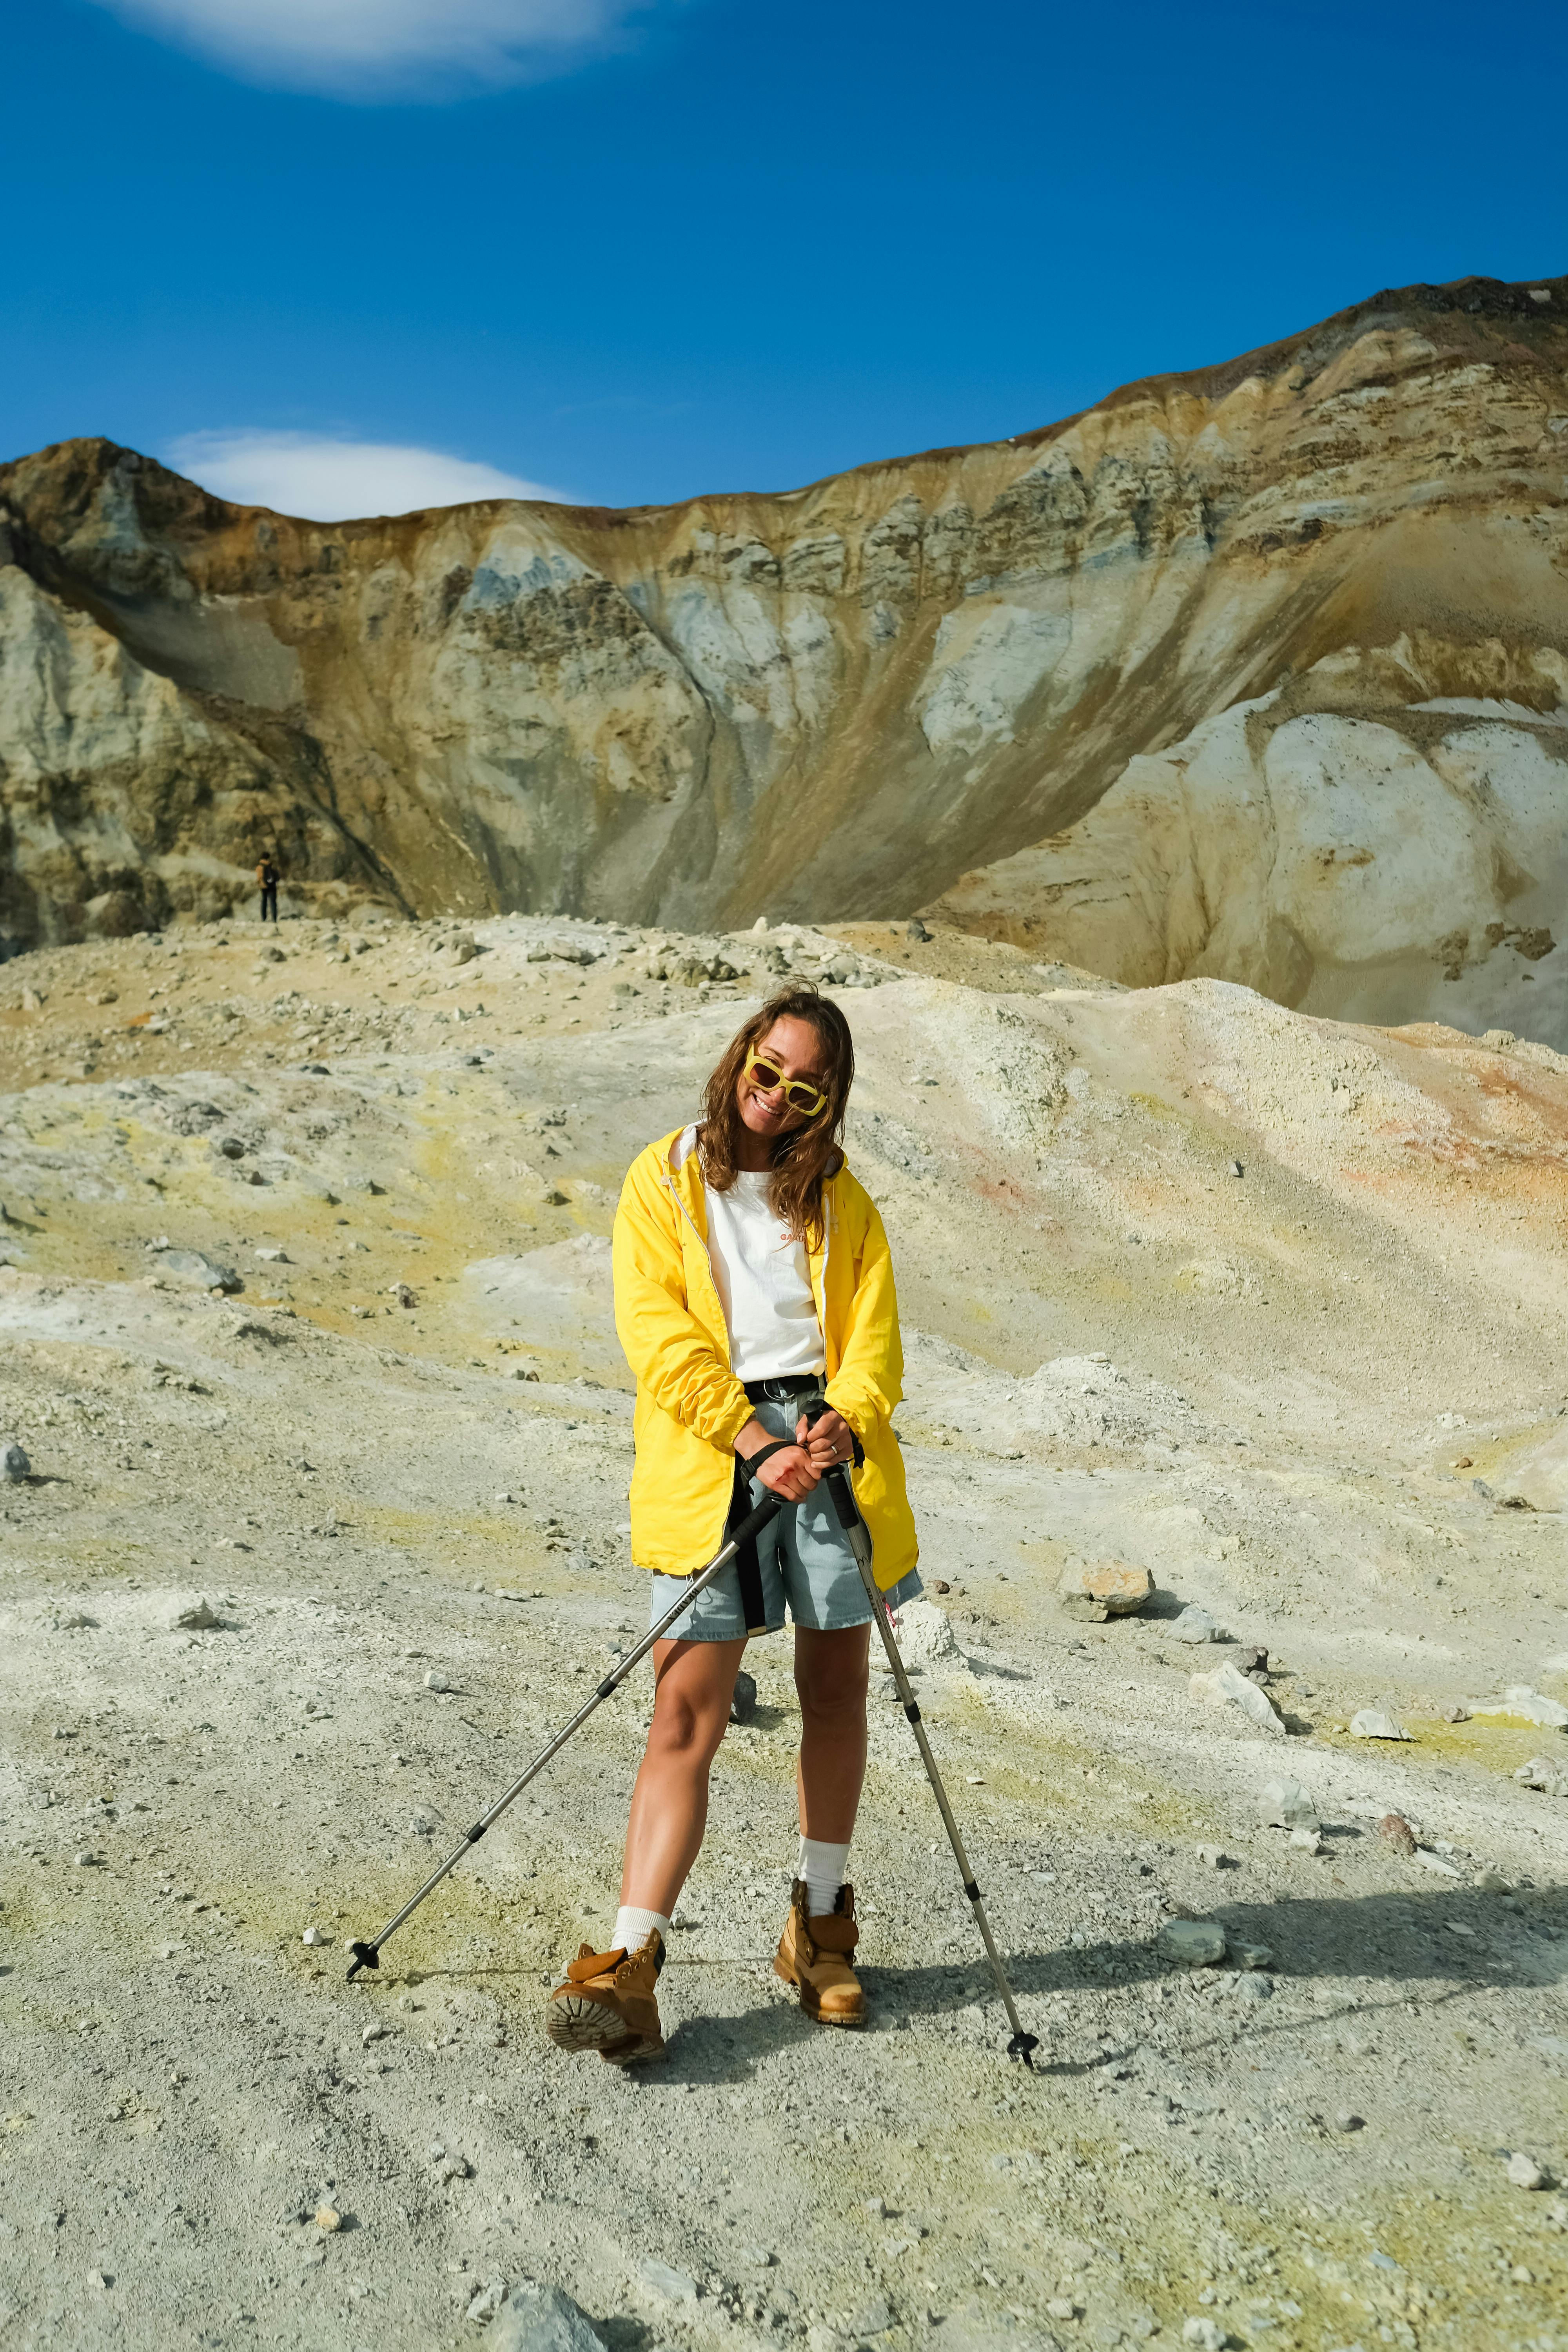 Dos excursionistas con polainas impermeables sobre botas de trekking  caminando con bastones entre rocas en el parque natural ropa y equipo para  mochileros y campamentos